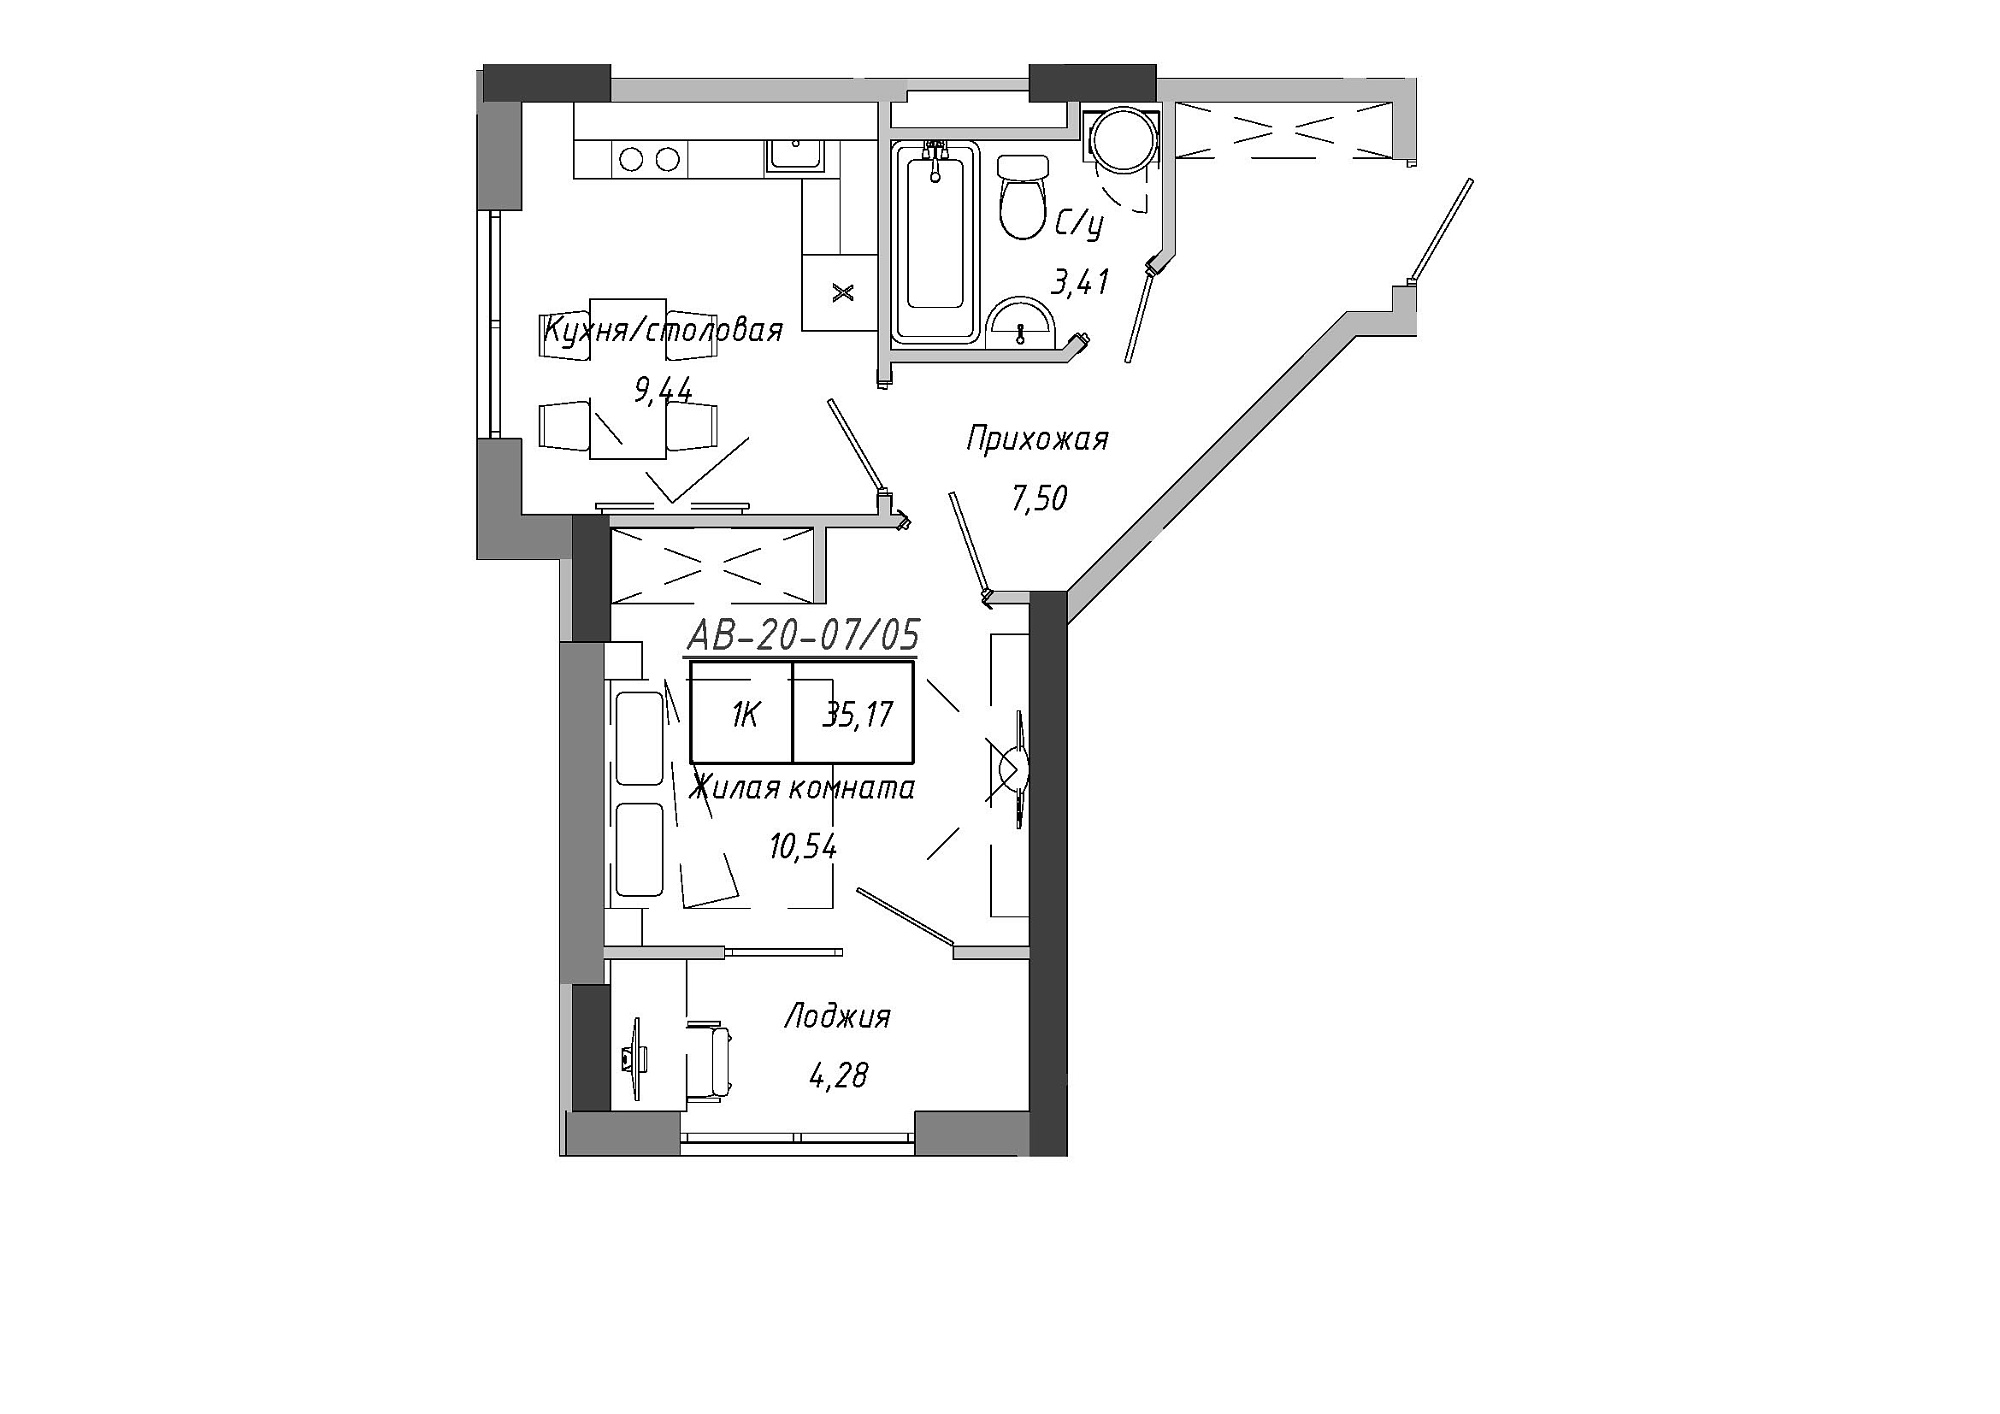 Планировка 1-к квартира площей 33.55м2, AB-20-07/00005.